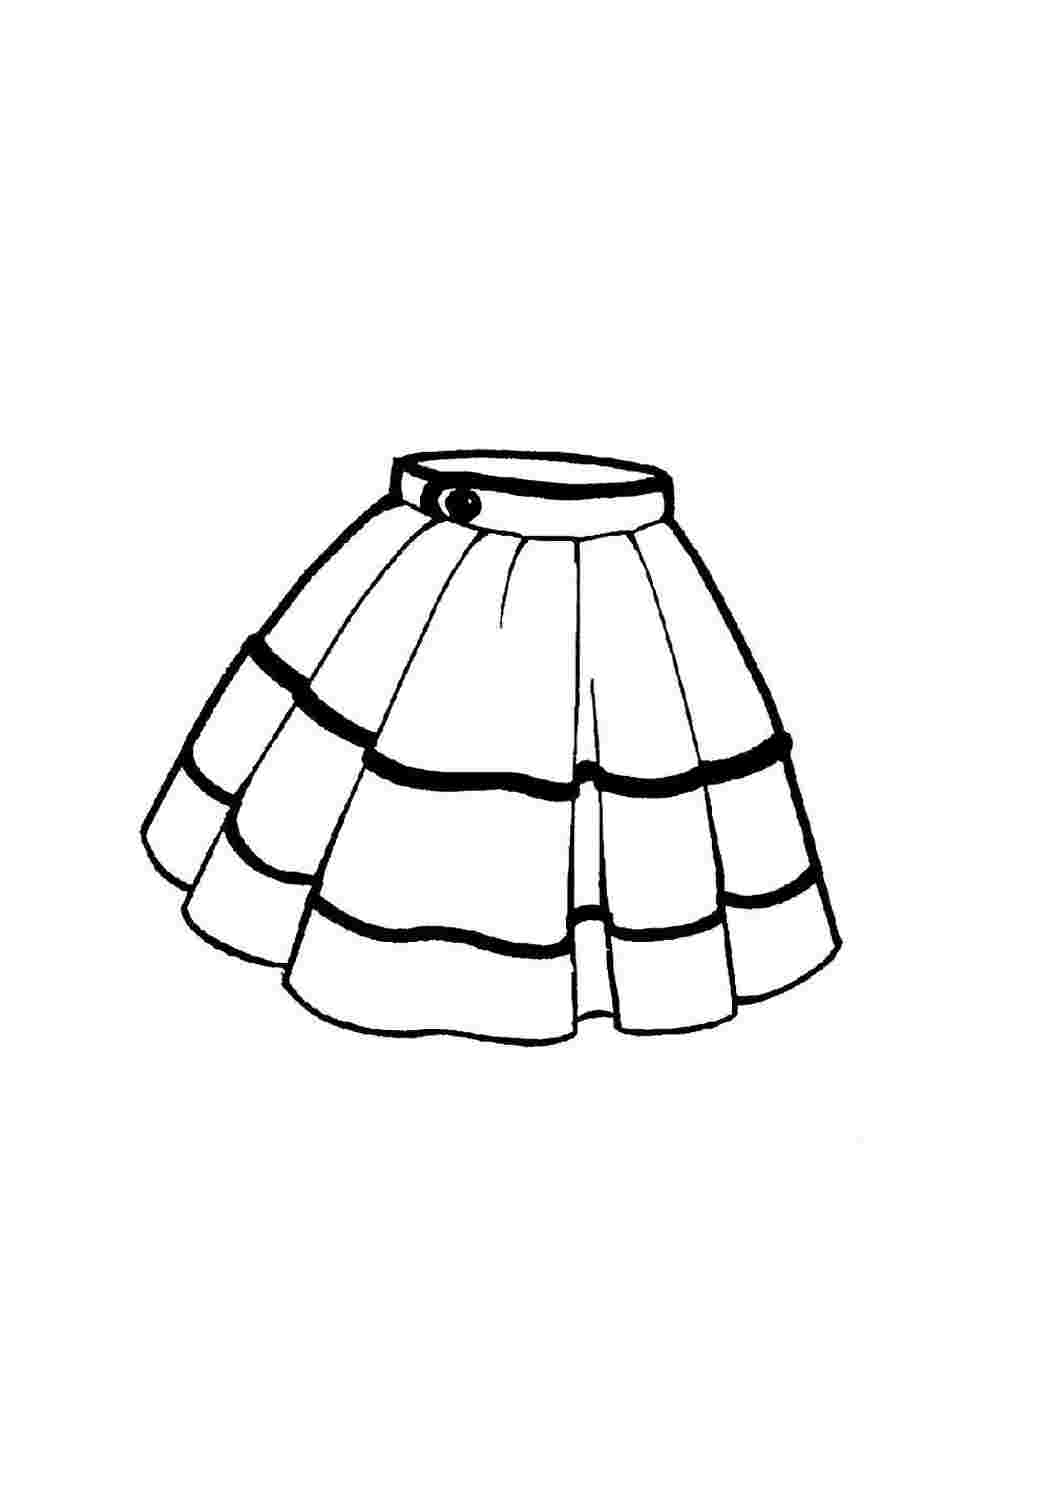 детские раскраски раскраски одежда раскраска юбка. Черно белые раскраски.